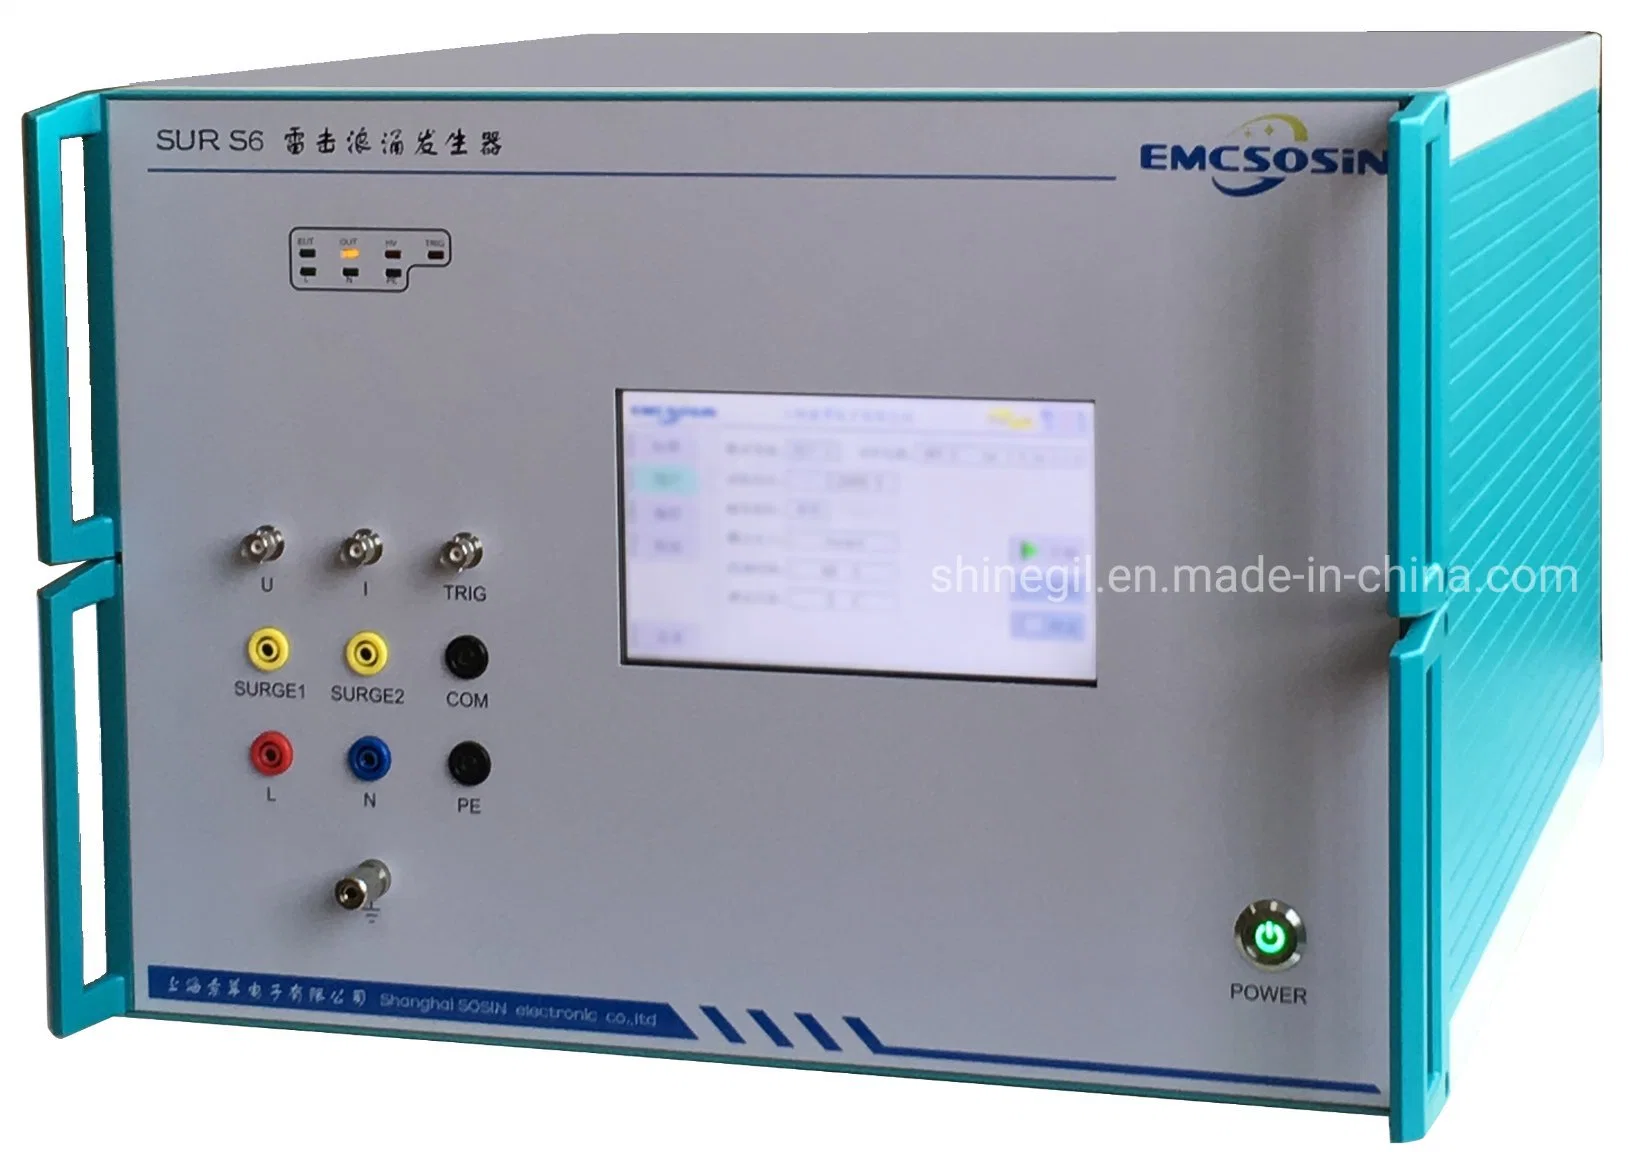 Générateur/simulateur de surtension EMC pour les essais d'immunité aux surtensions selon la norme IEC 61000-4-5